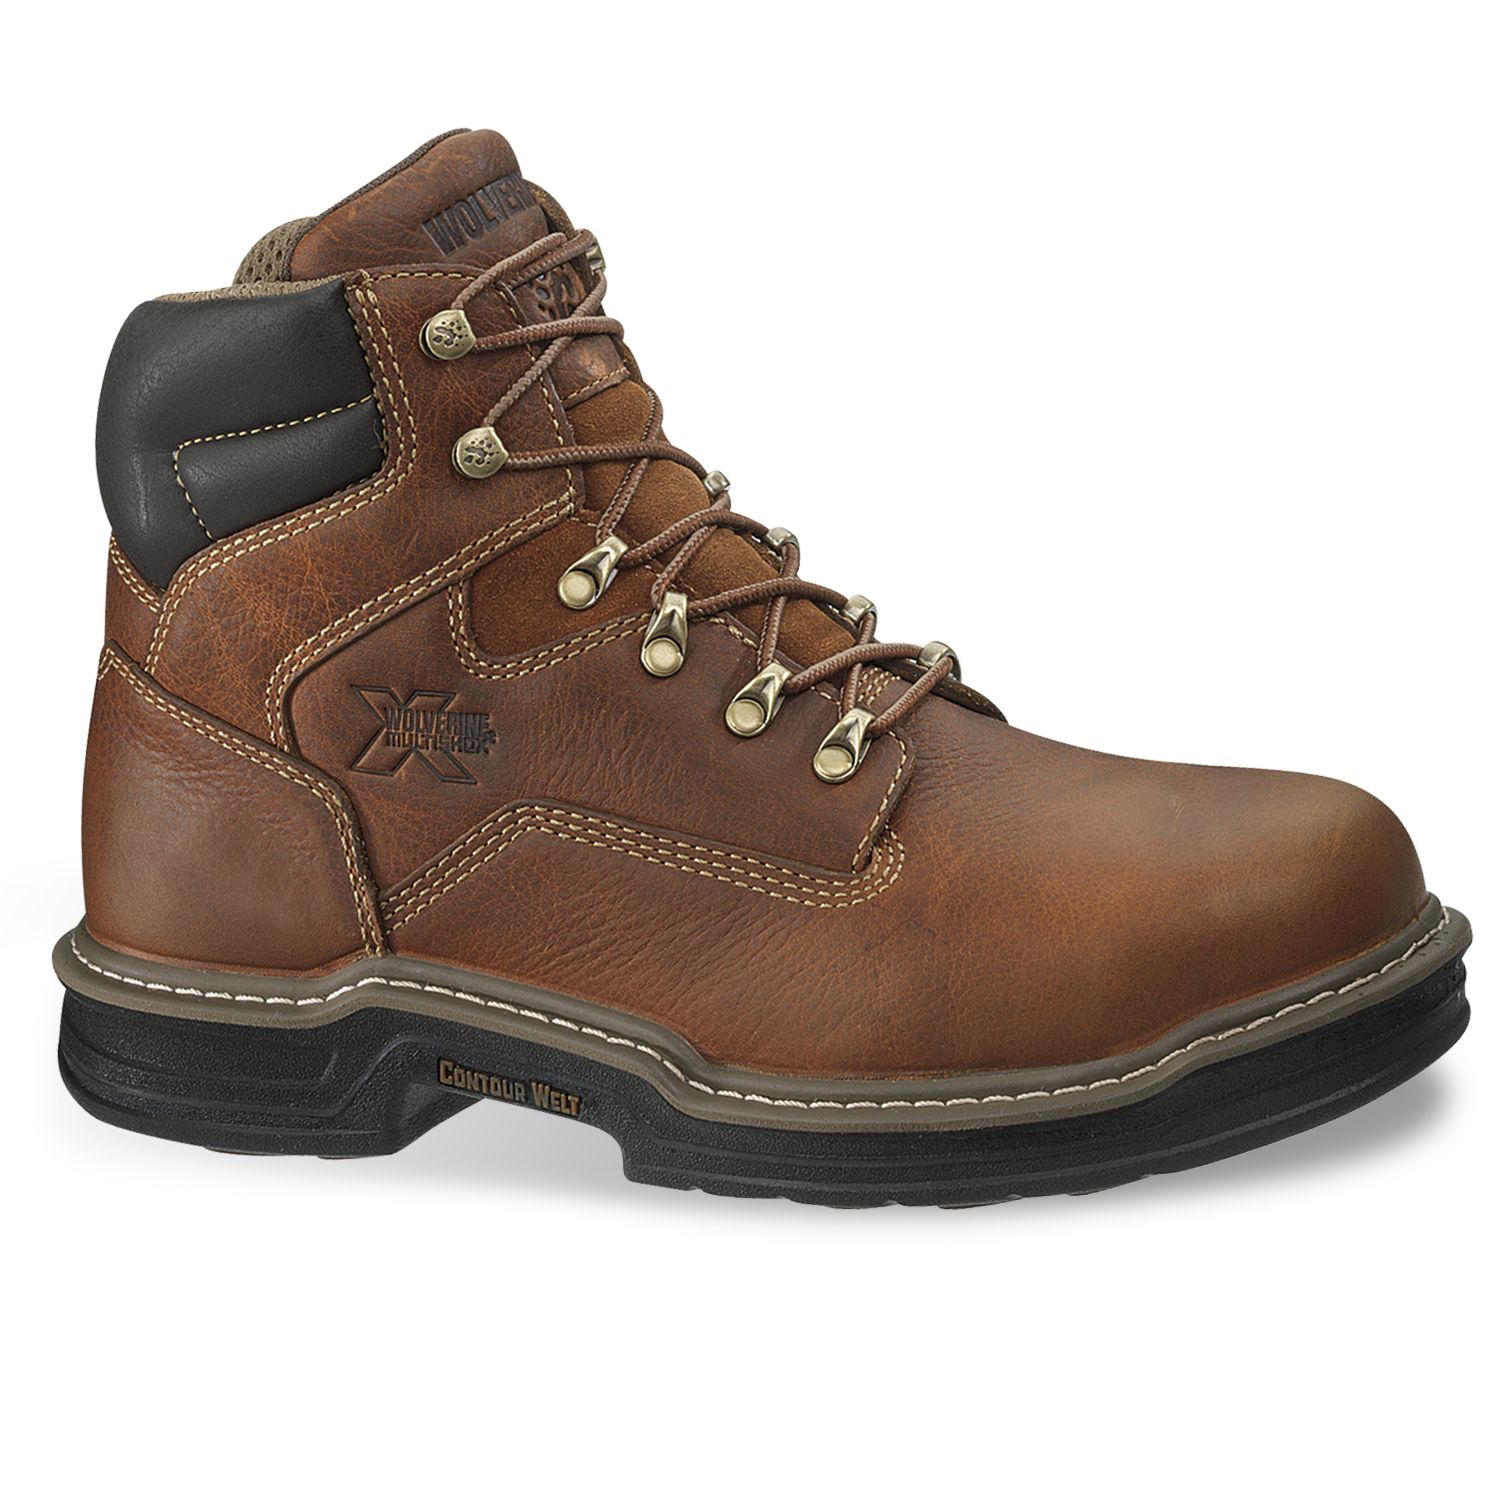 wolverine men's iron ridge steel toe work boots